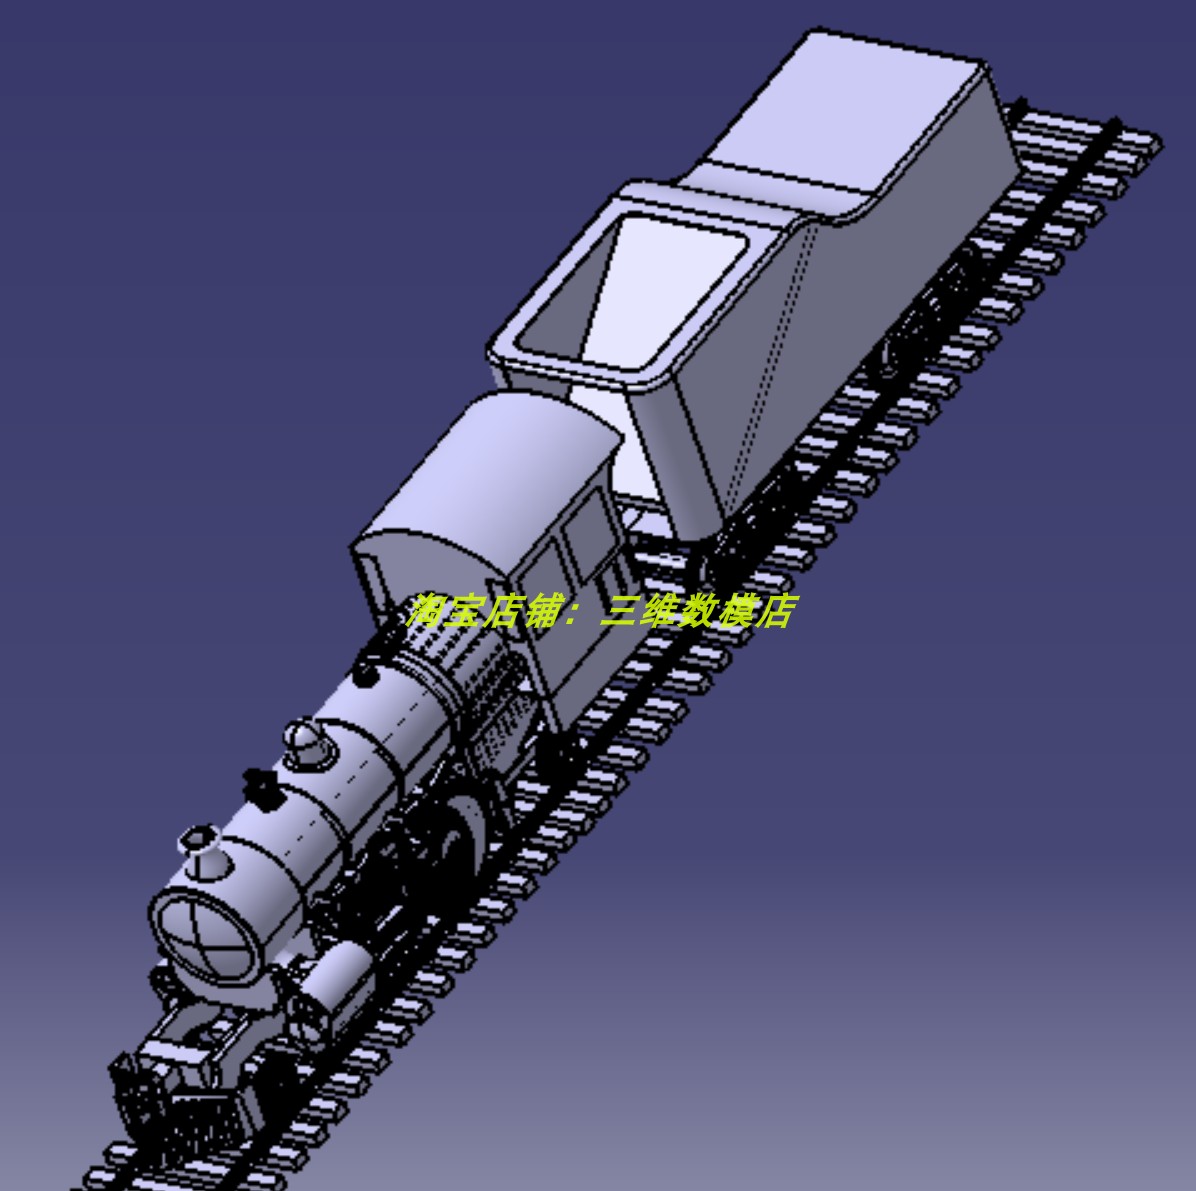 老式窄轨道铁路蒸汽机车火车轮列车头3D三维几何数模型底盘悬架挂